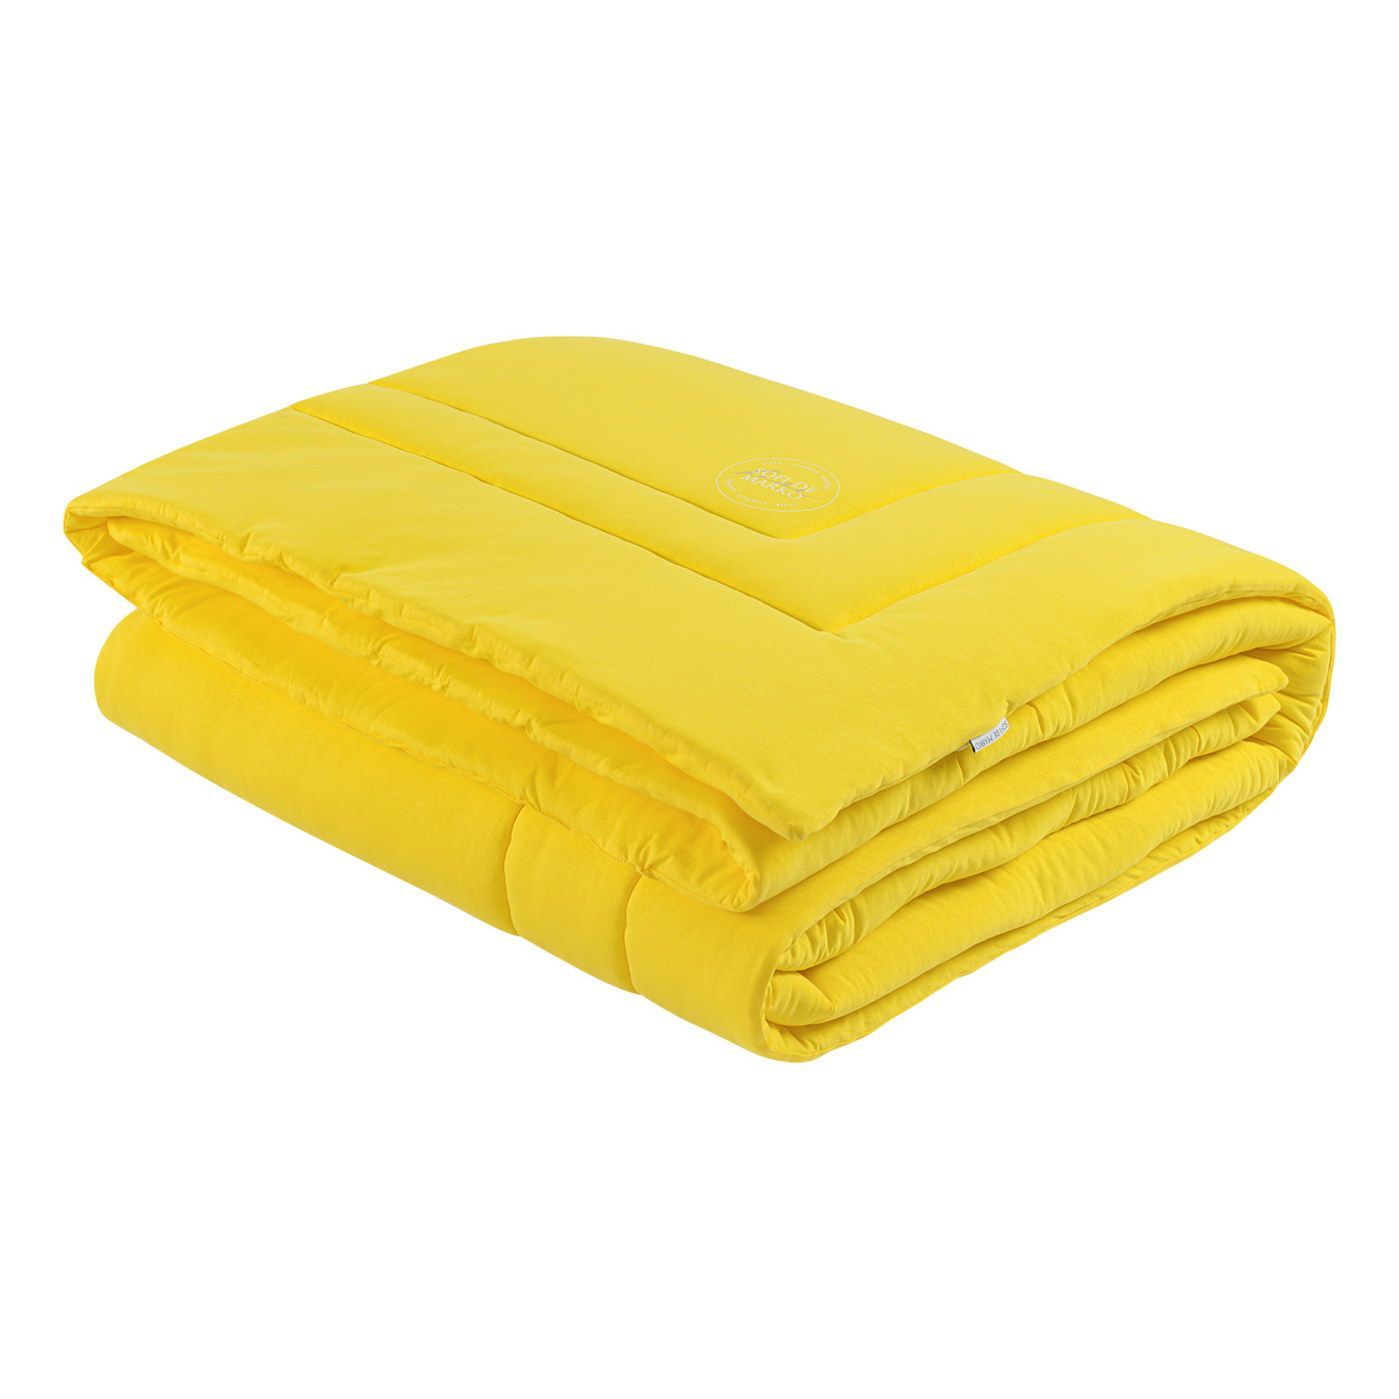 Одеяло-покрывало Роланд цвет: желтый (220х235 см), размер 220х235 см sofi973222 Одеяло-покрывало Роланд цвет: желтый (220х235 см) - фото 1